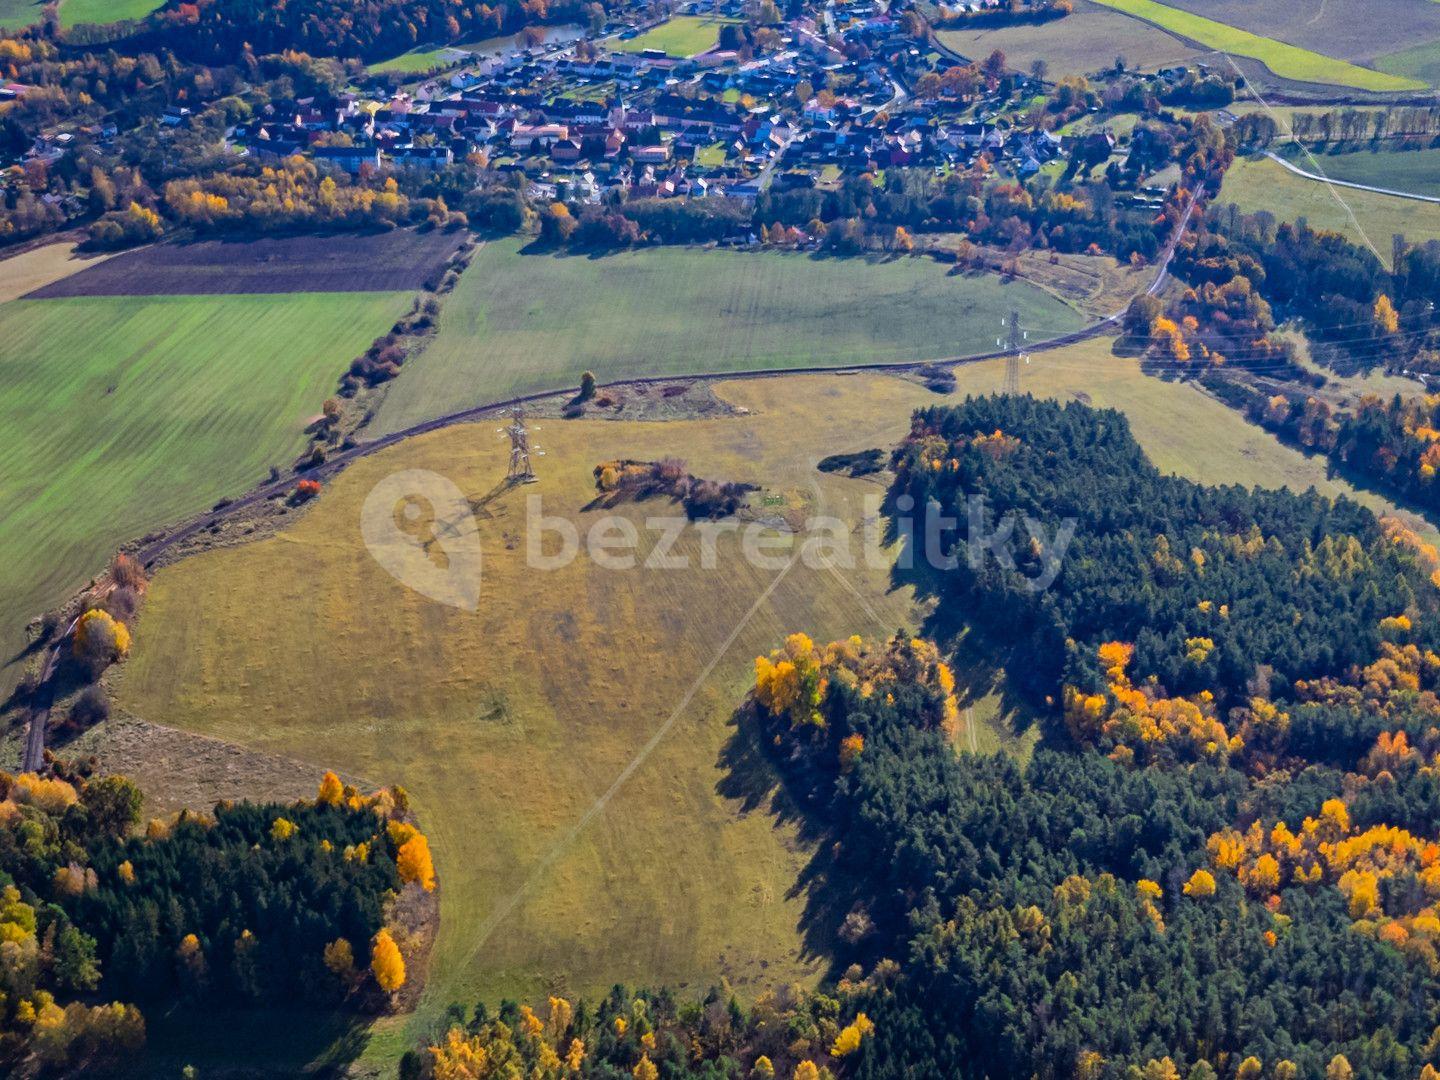 Predaj pozemku 115.720 m², Stráž, Plzeňský kraj